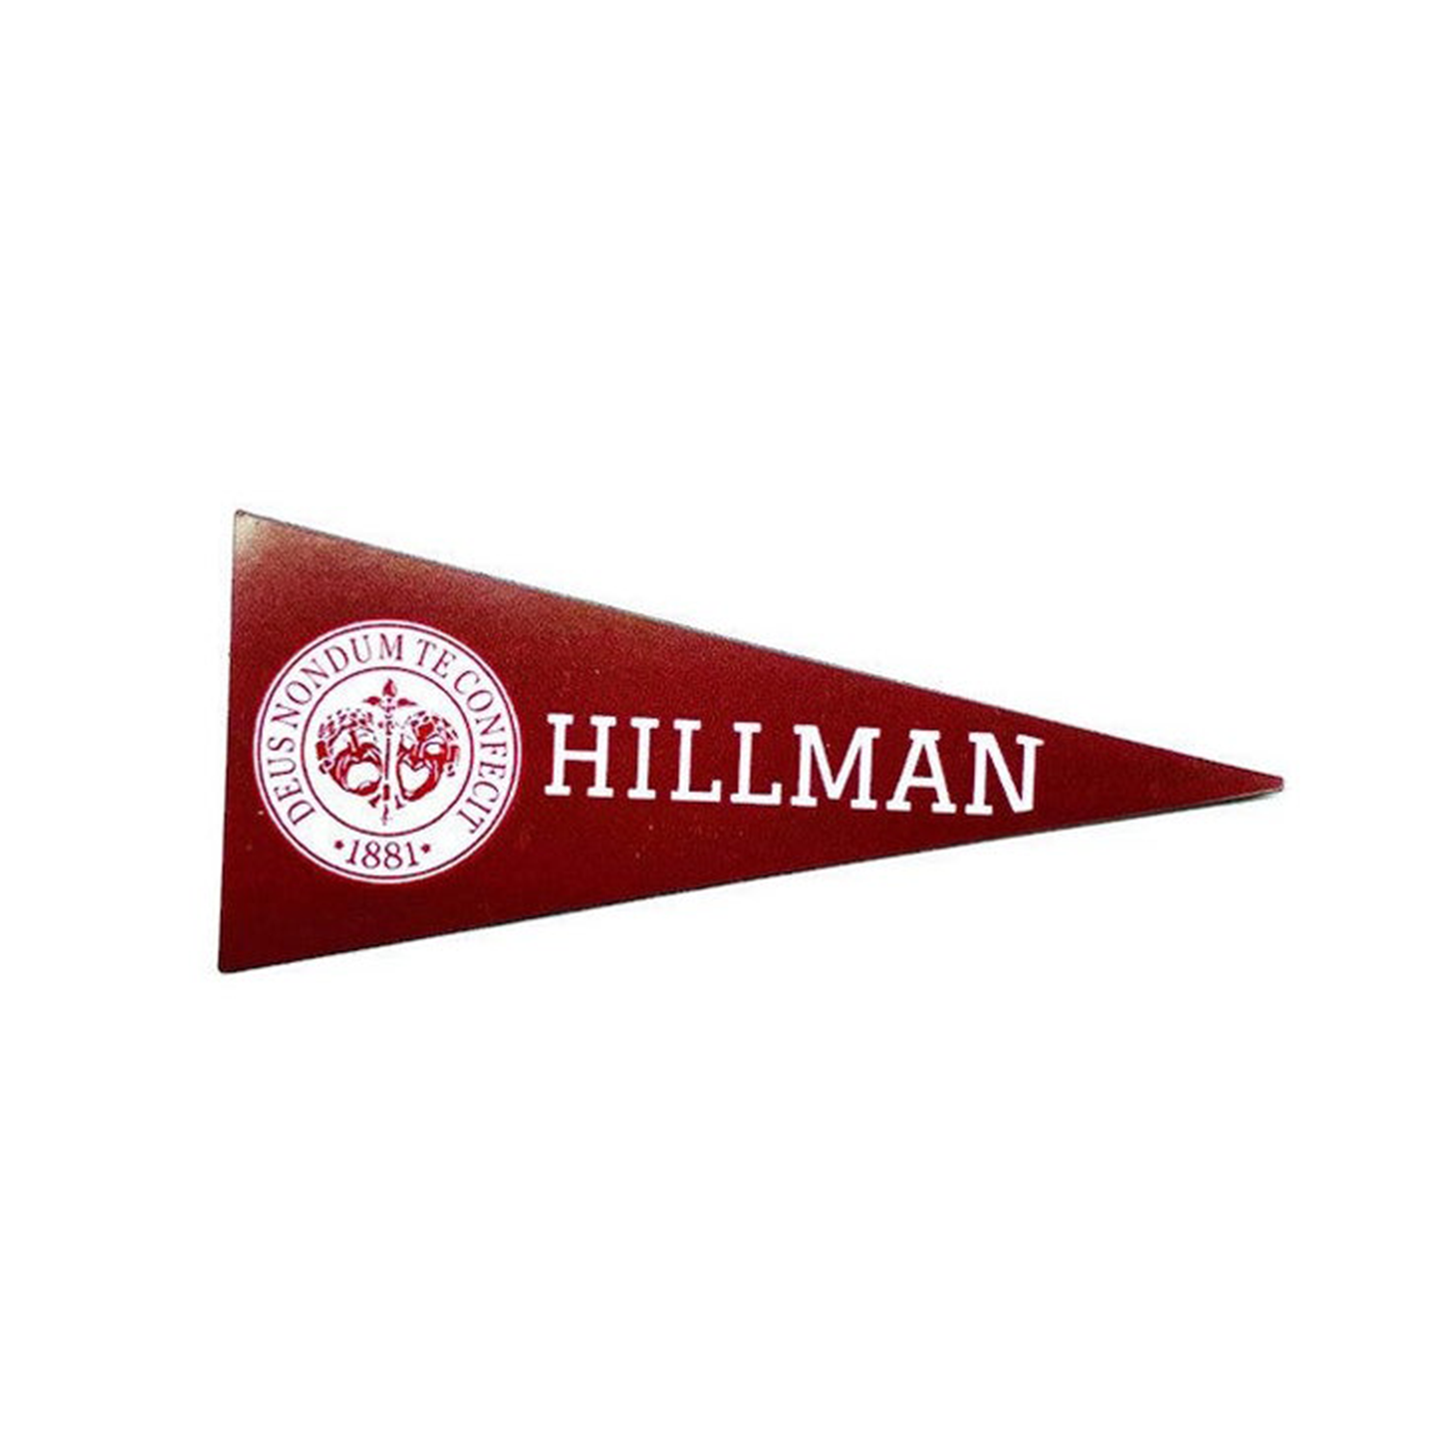 Hillman - Vinyl Magnet